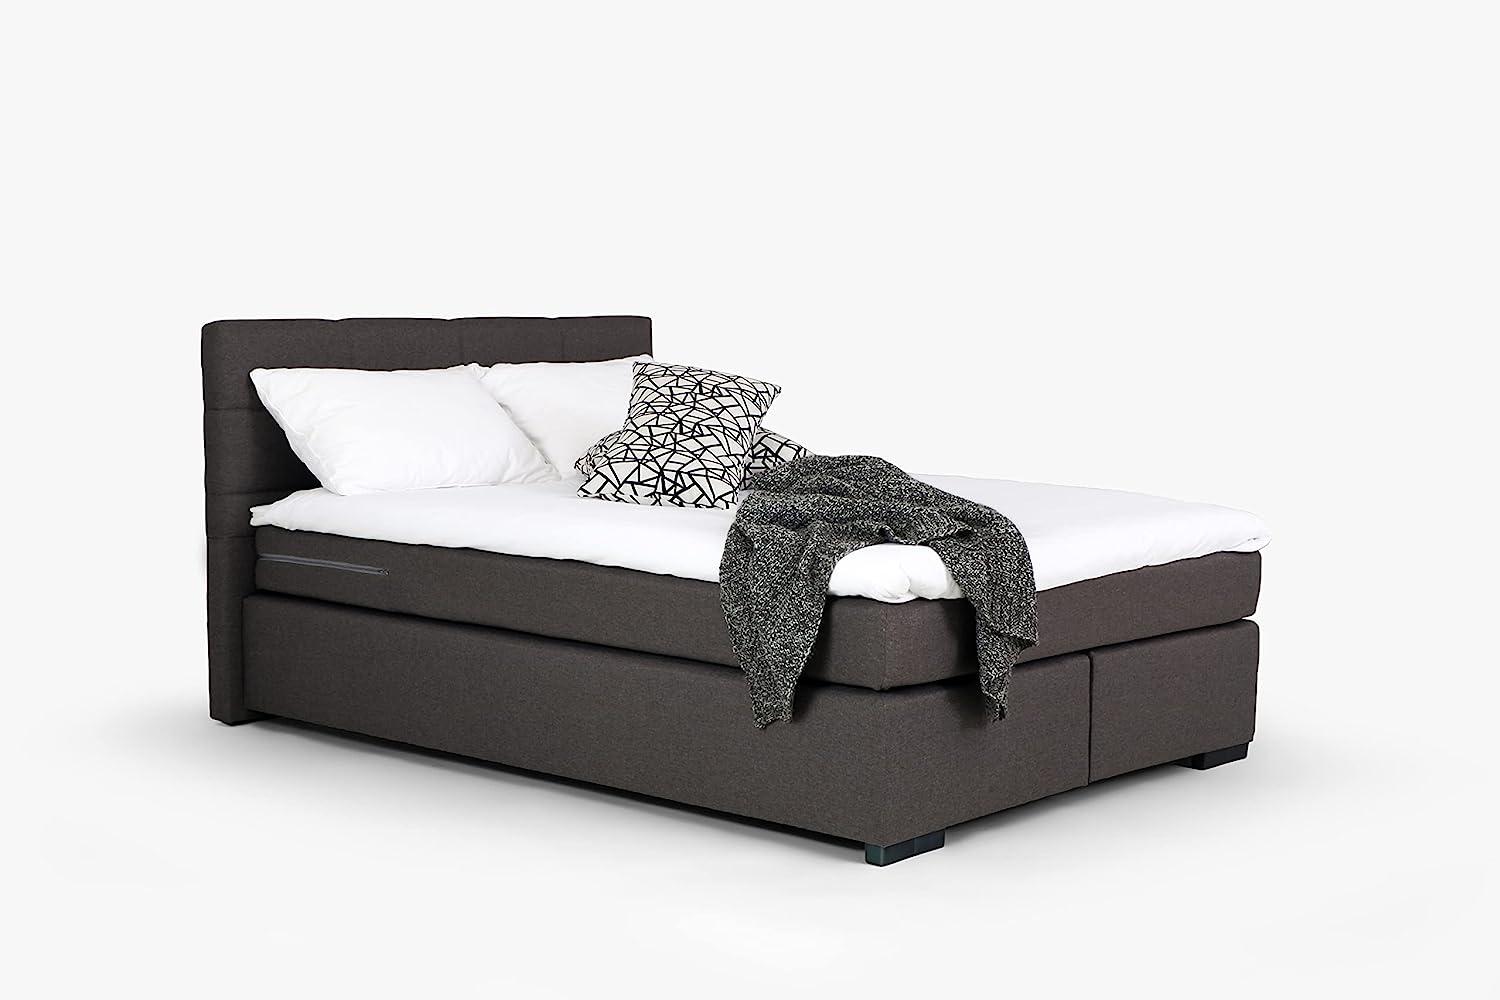 Mivano Beast Boxbett, Komfortables Bett mit Durchgehender Matratze (H3) und Topper, Flachgewebe Karoo Dunkelgrau, Liegefläche 140 x 200 cm Bild 1